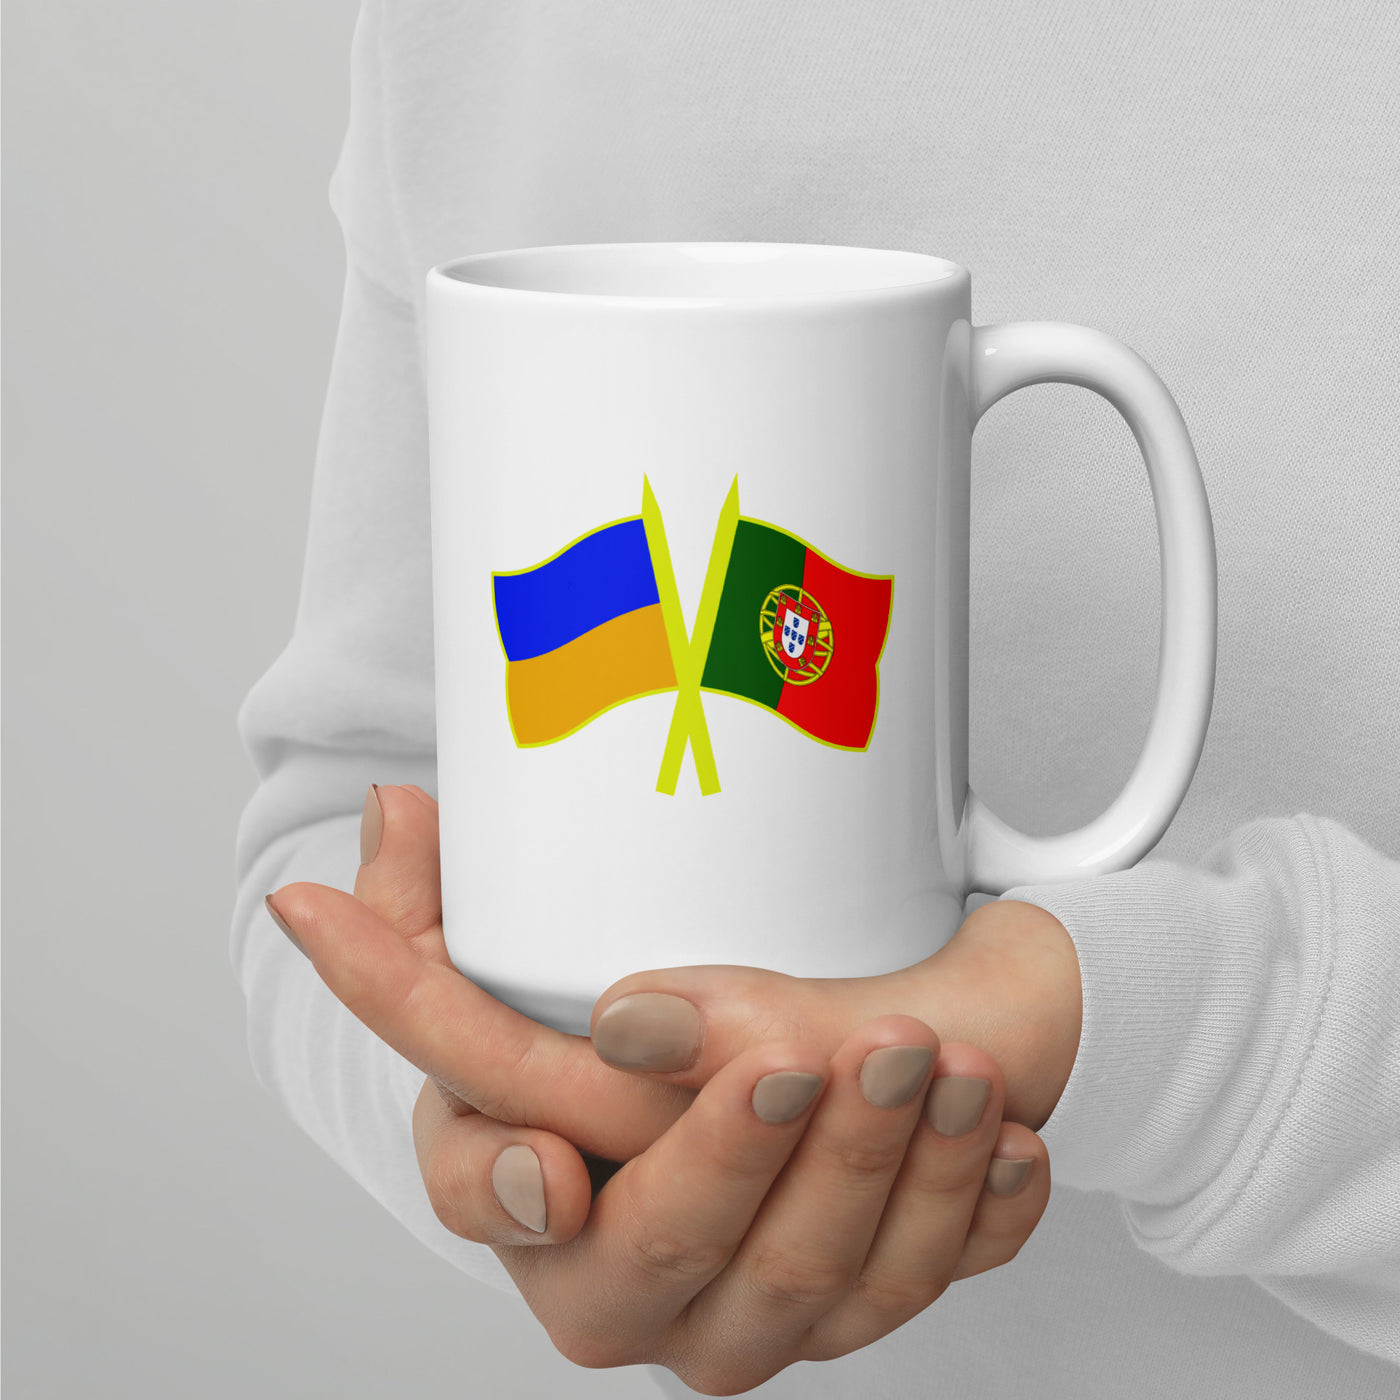 Portugal-Ukraine Mug